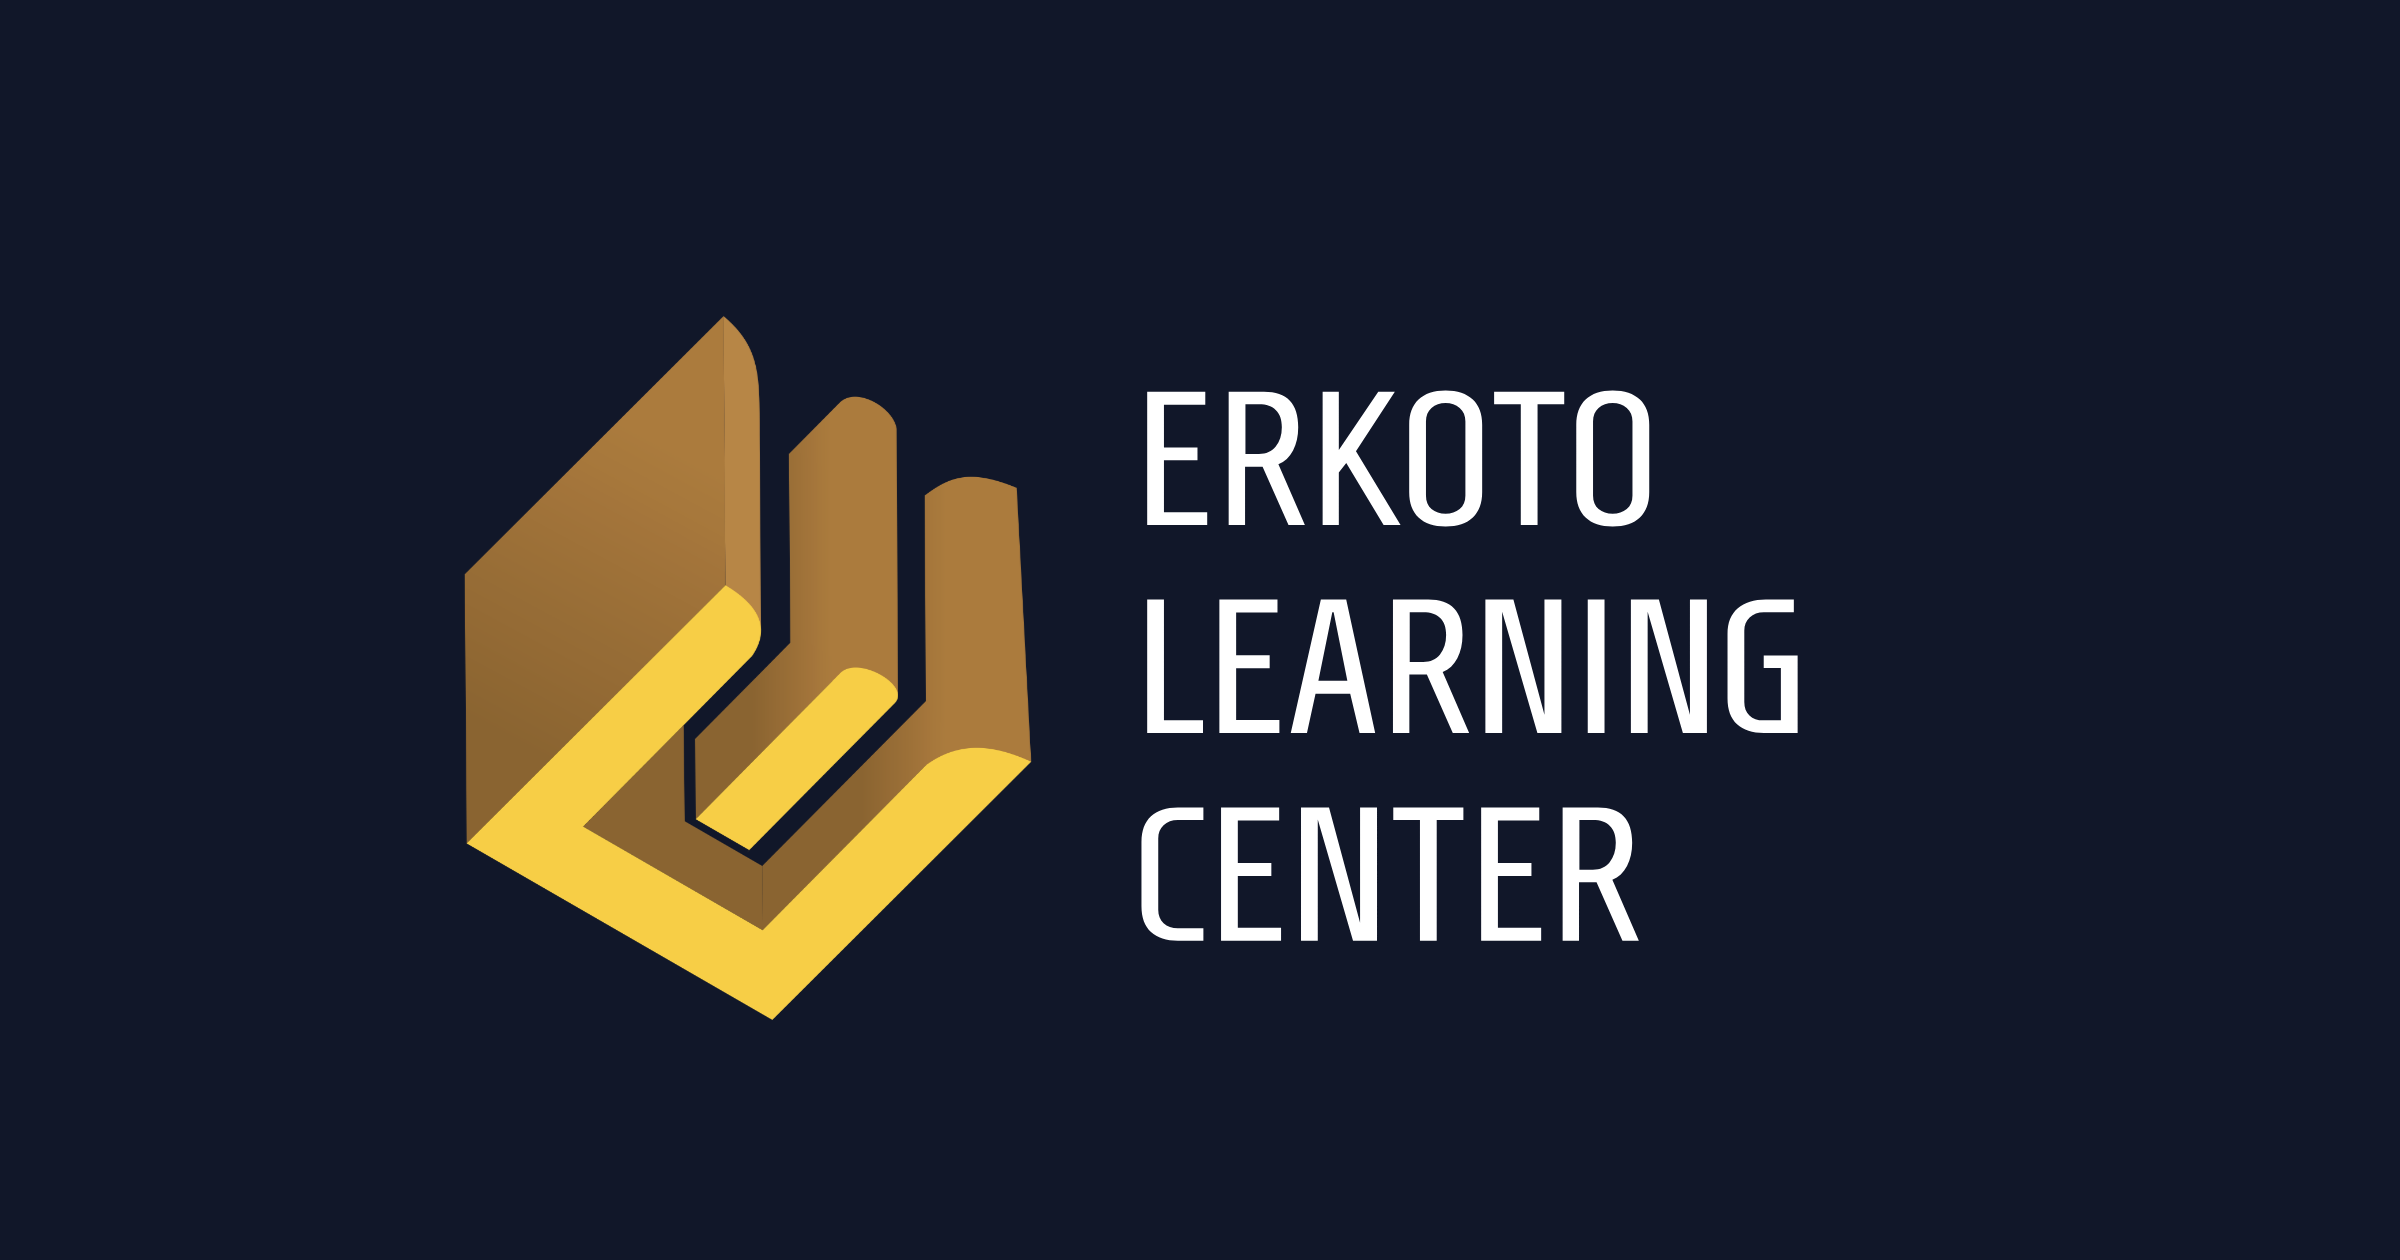 Erkoto Learning Center